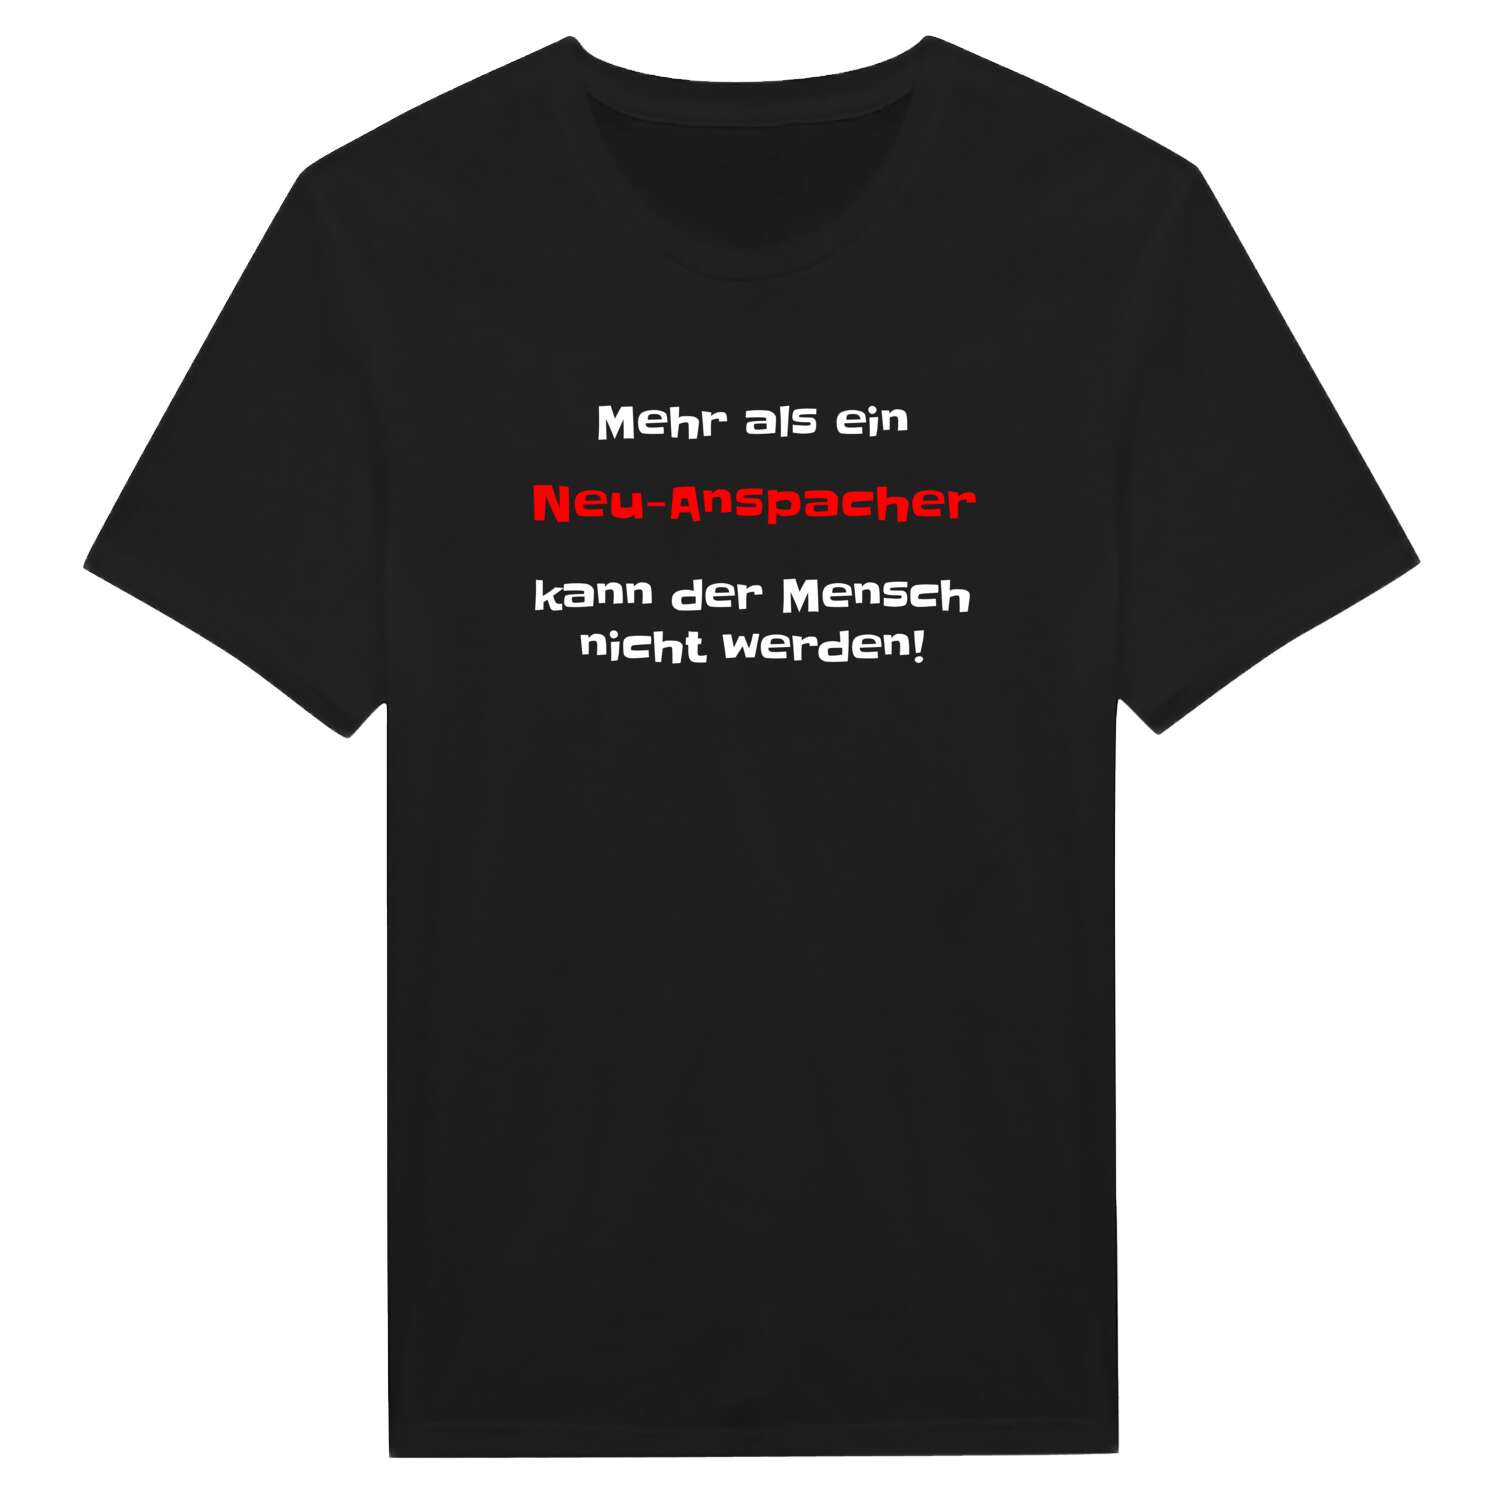 Neu-Anspach T-Shirt »Mehr als ein«